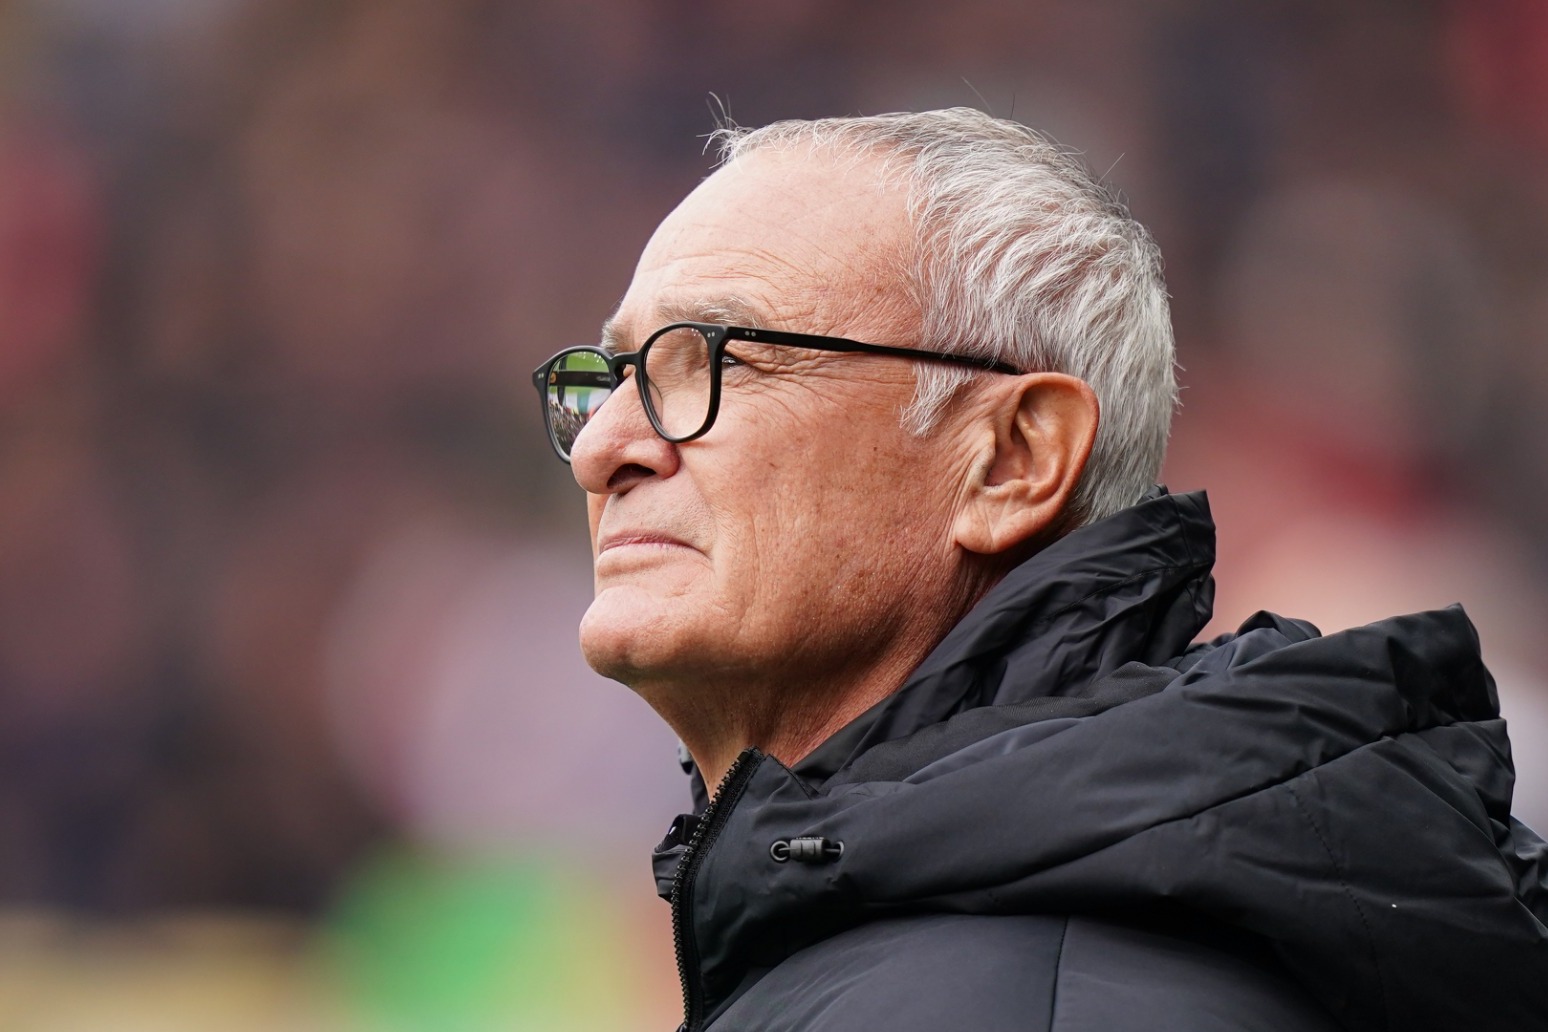 Watford sack boss Claudio Ranieri after just 16 weeks in charge 